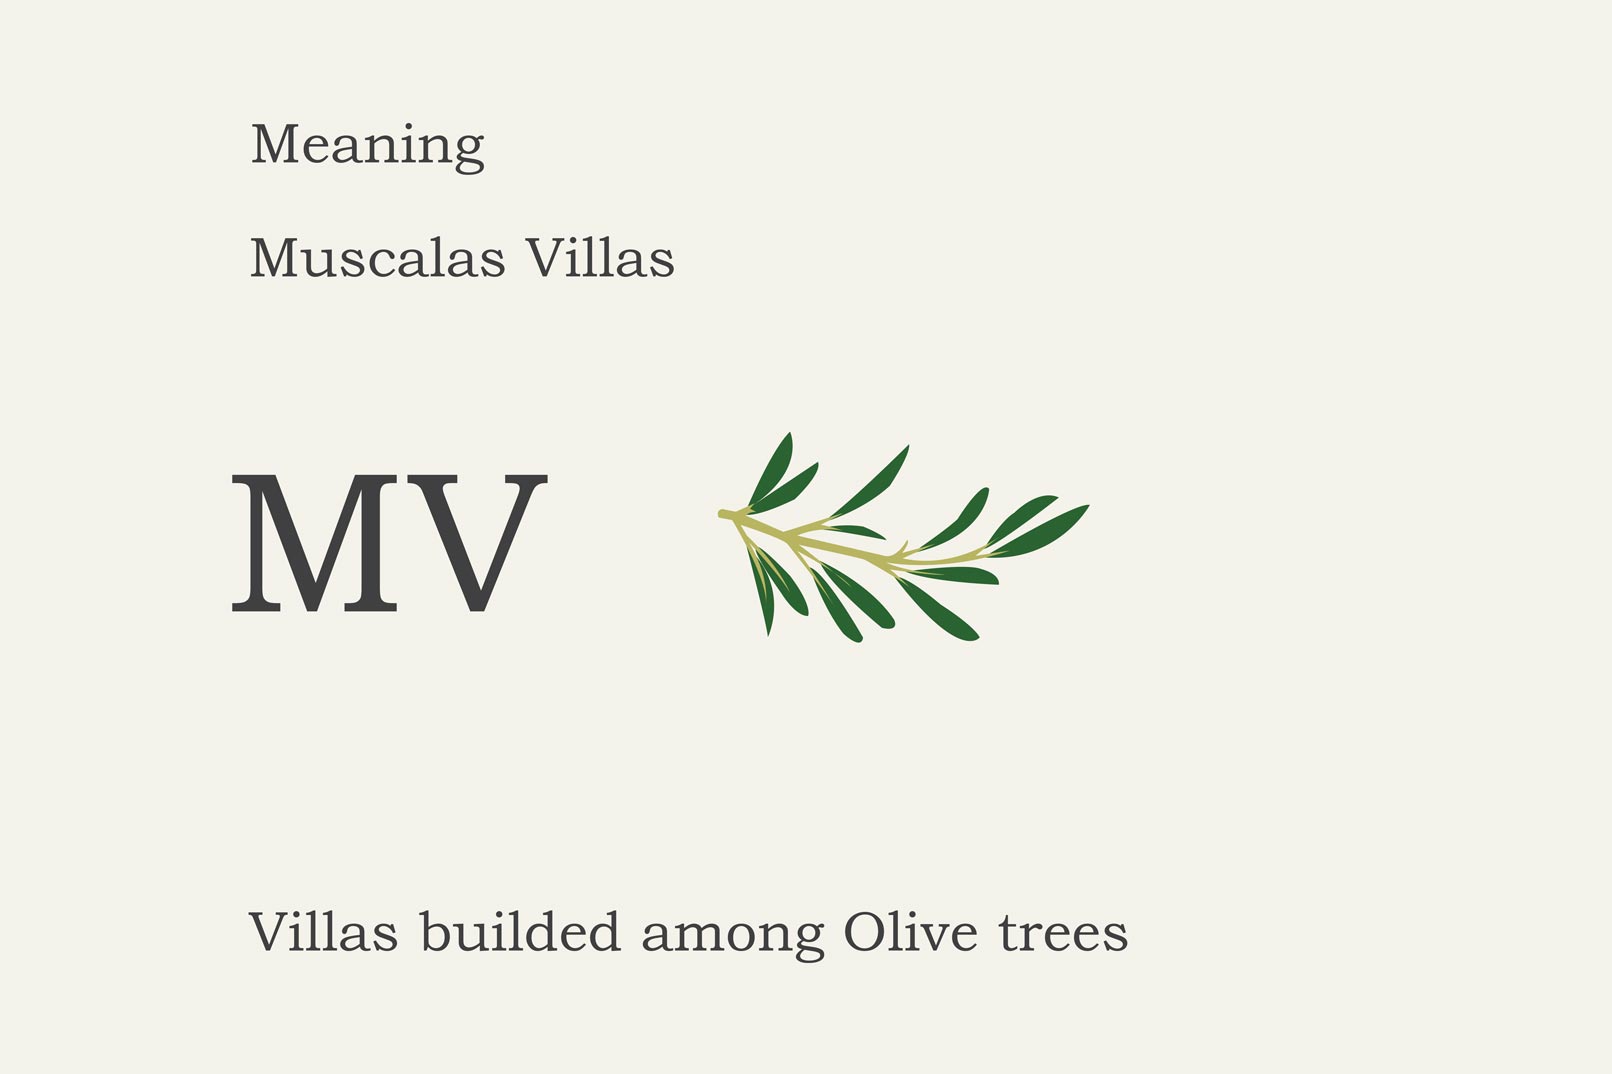 motivar portfolio branding villas muscalas idea